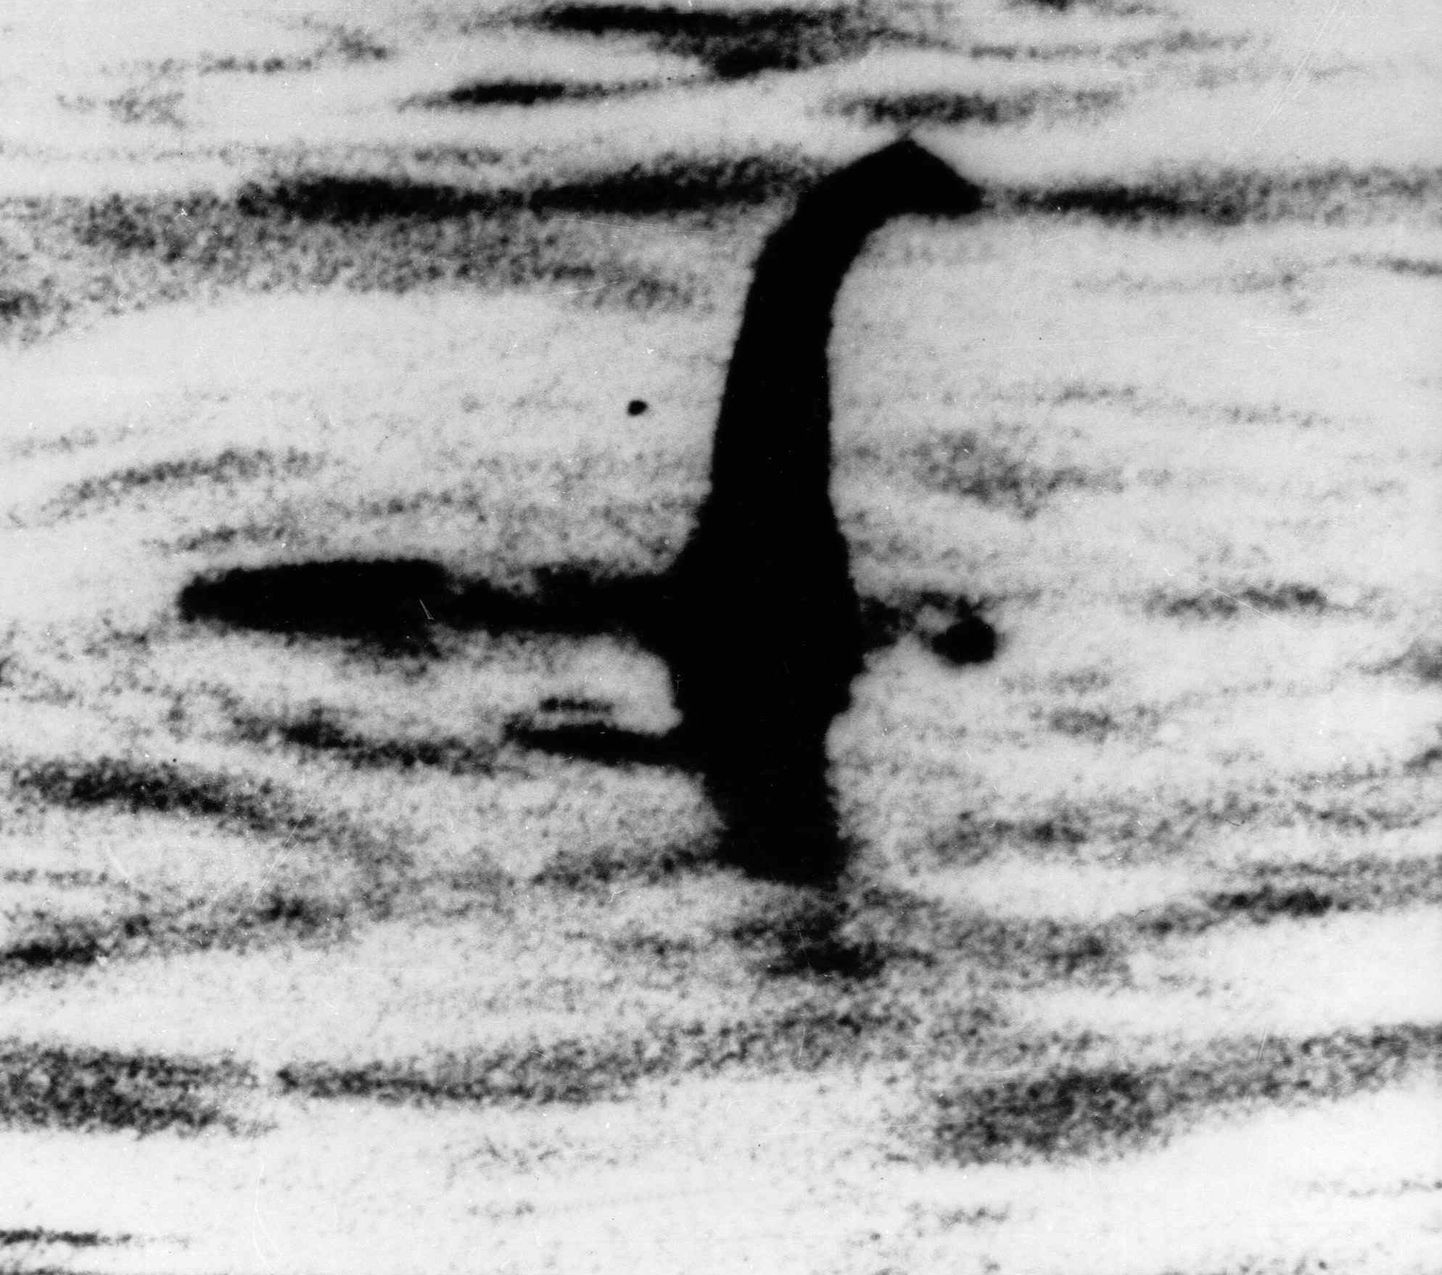 Mustvalge foto, mis tehti 1930. aastatel ja millel väideti olevat Loch Nessi koletis. Nüüdseks on tehtud kindlaks, et tegemist on võltsinguga